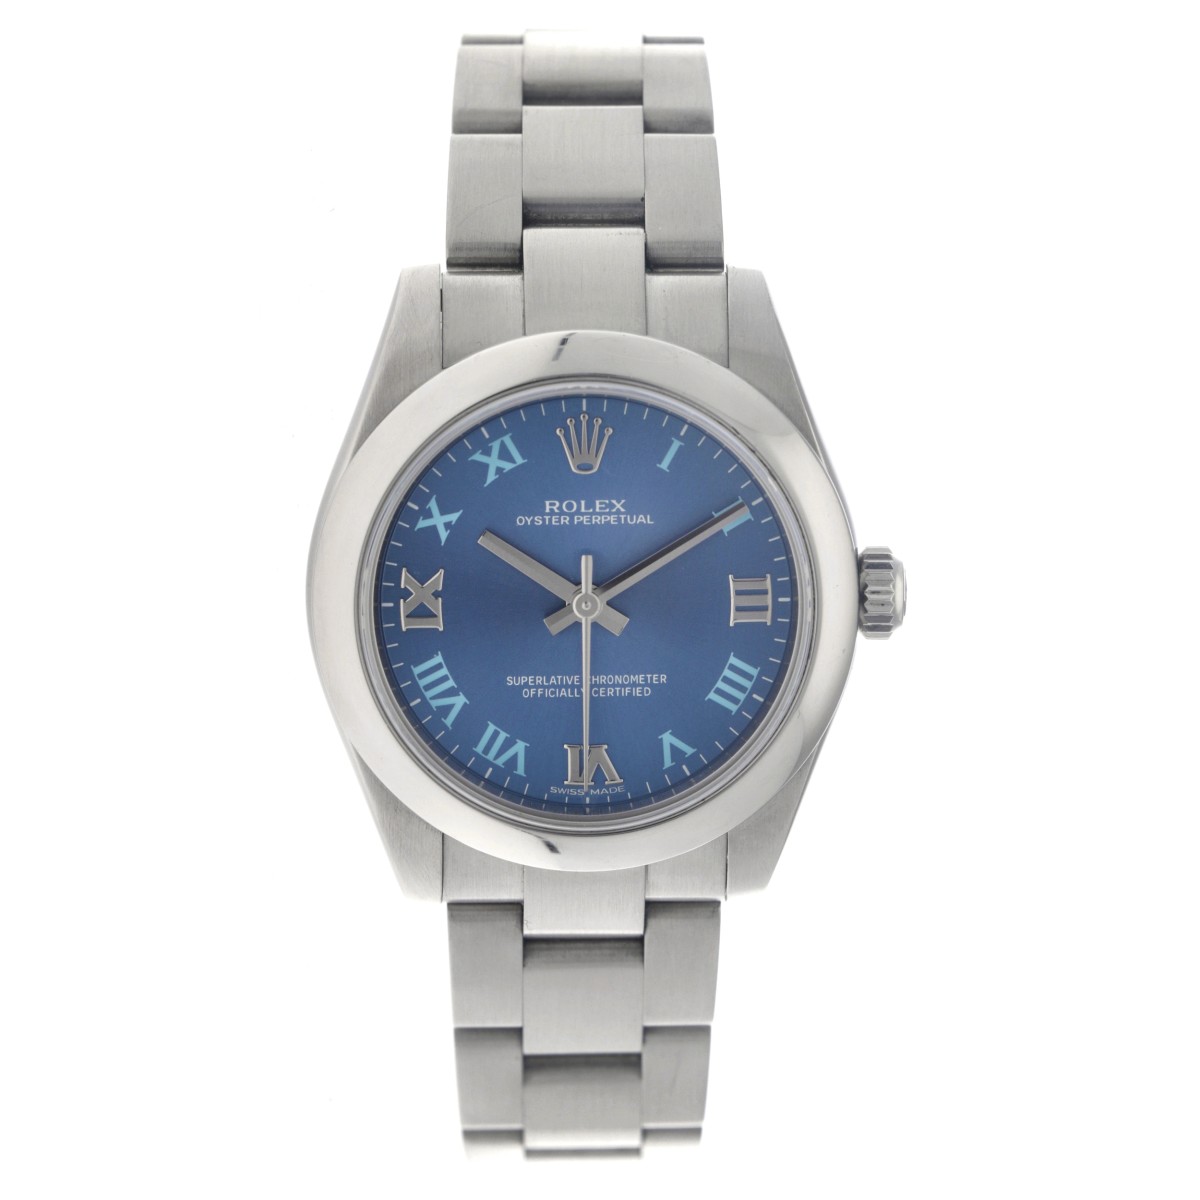 No reserve - Rolex Oyster Perpetual 31 177200 - Midsize Horloge - 2015.